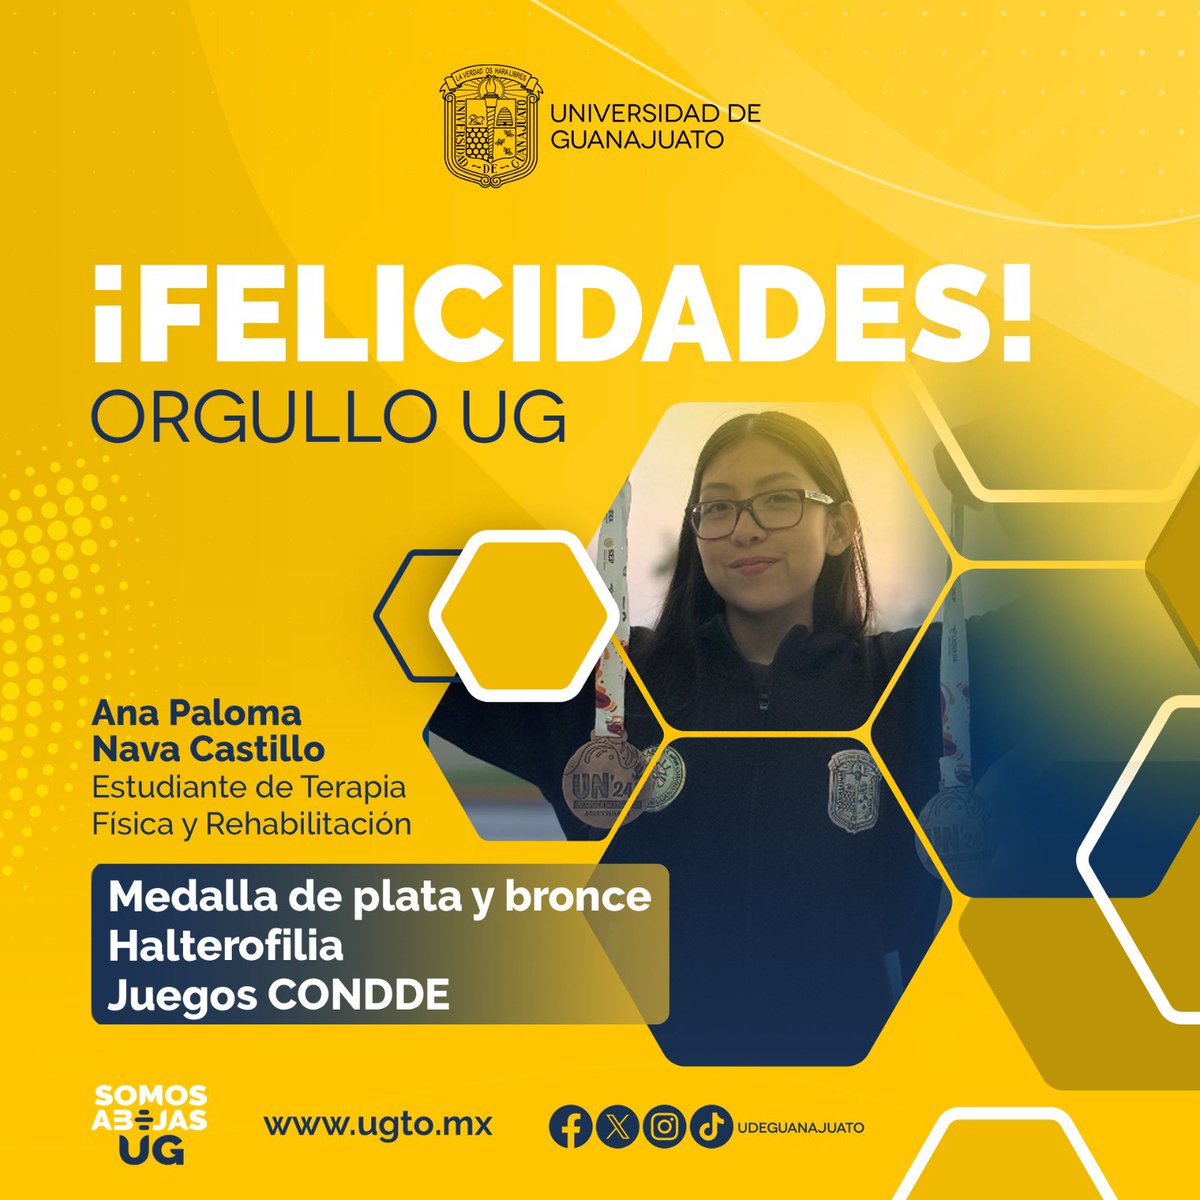 ¡Enhorabuena a Ana Paloma Nava Castillo, por las preseas obtenidas!

🏅 Medalla de plata en envión con 70kg.
🏅 Medalla bronce en total con 123kg.

#SomosAbejasUG